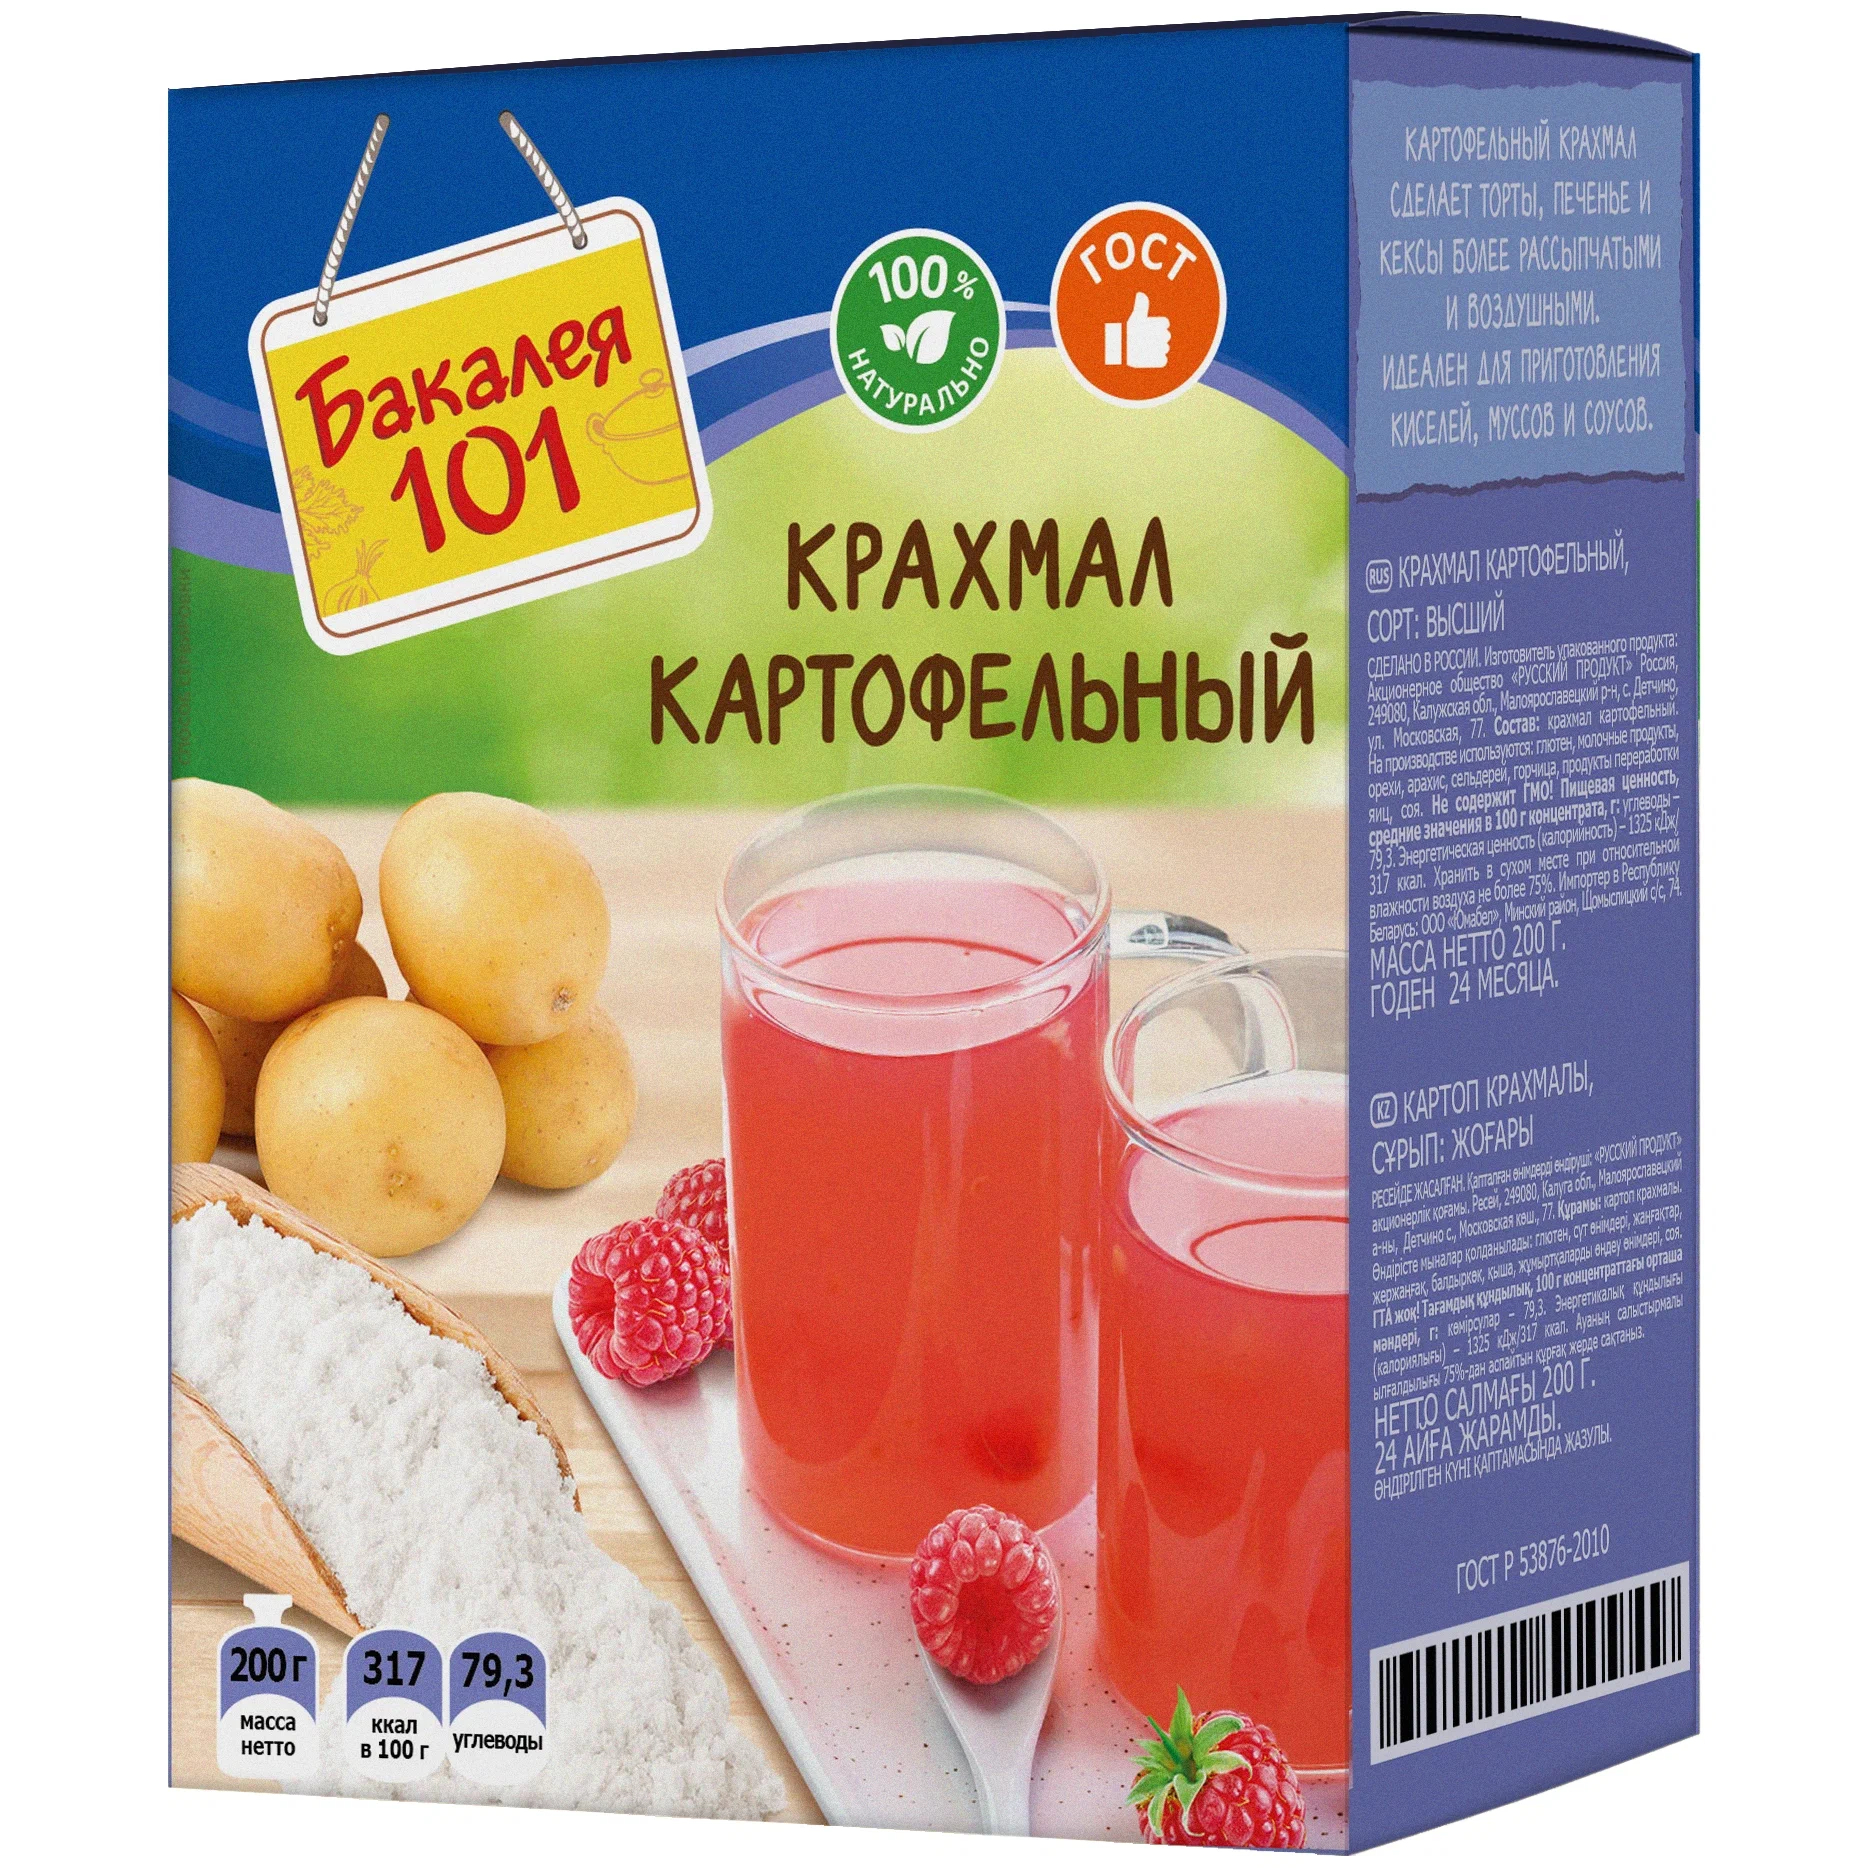 Крахмал картофельный Русский продукт Бакалея 101 200 г лимонная кислота русский продукт бакалея 101 250 г